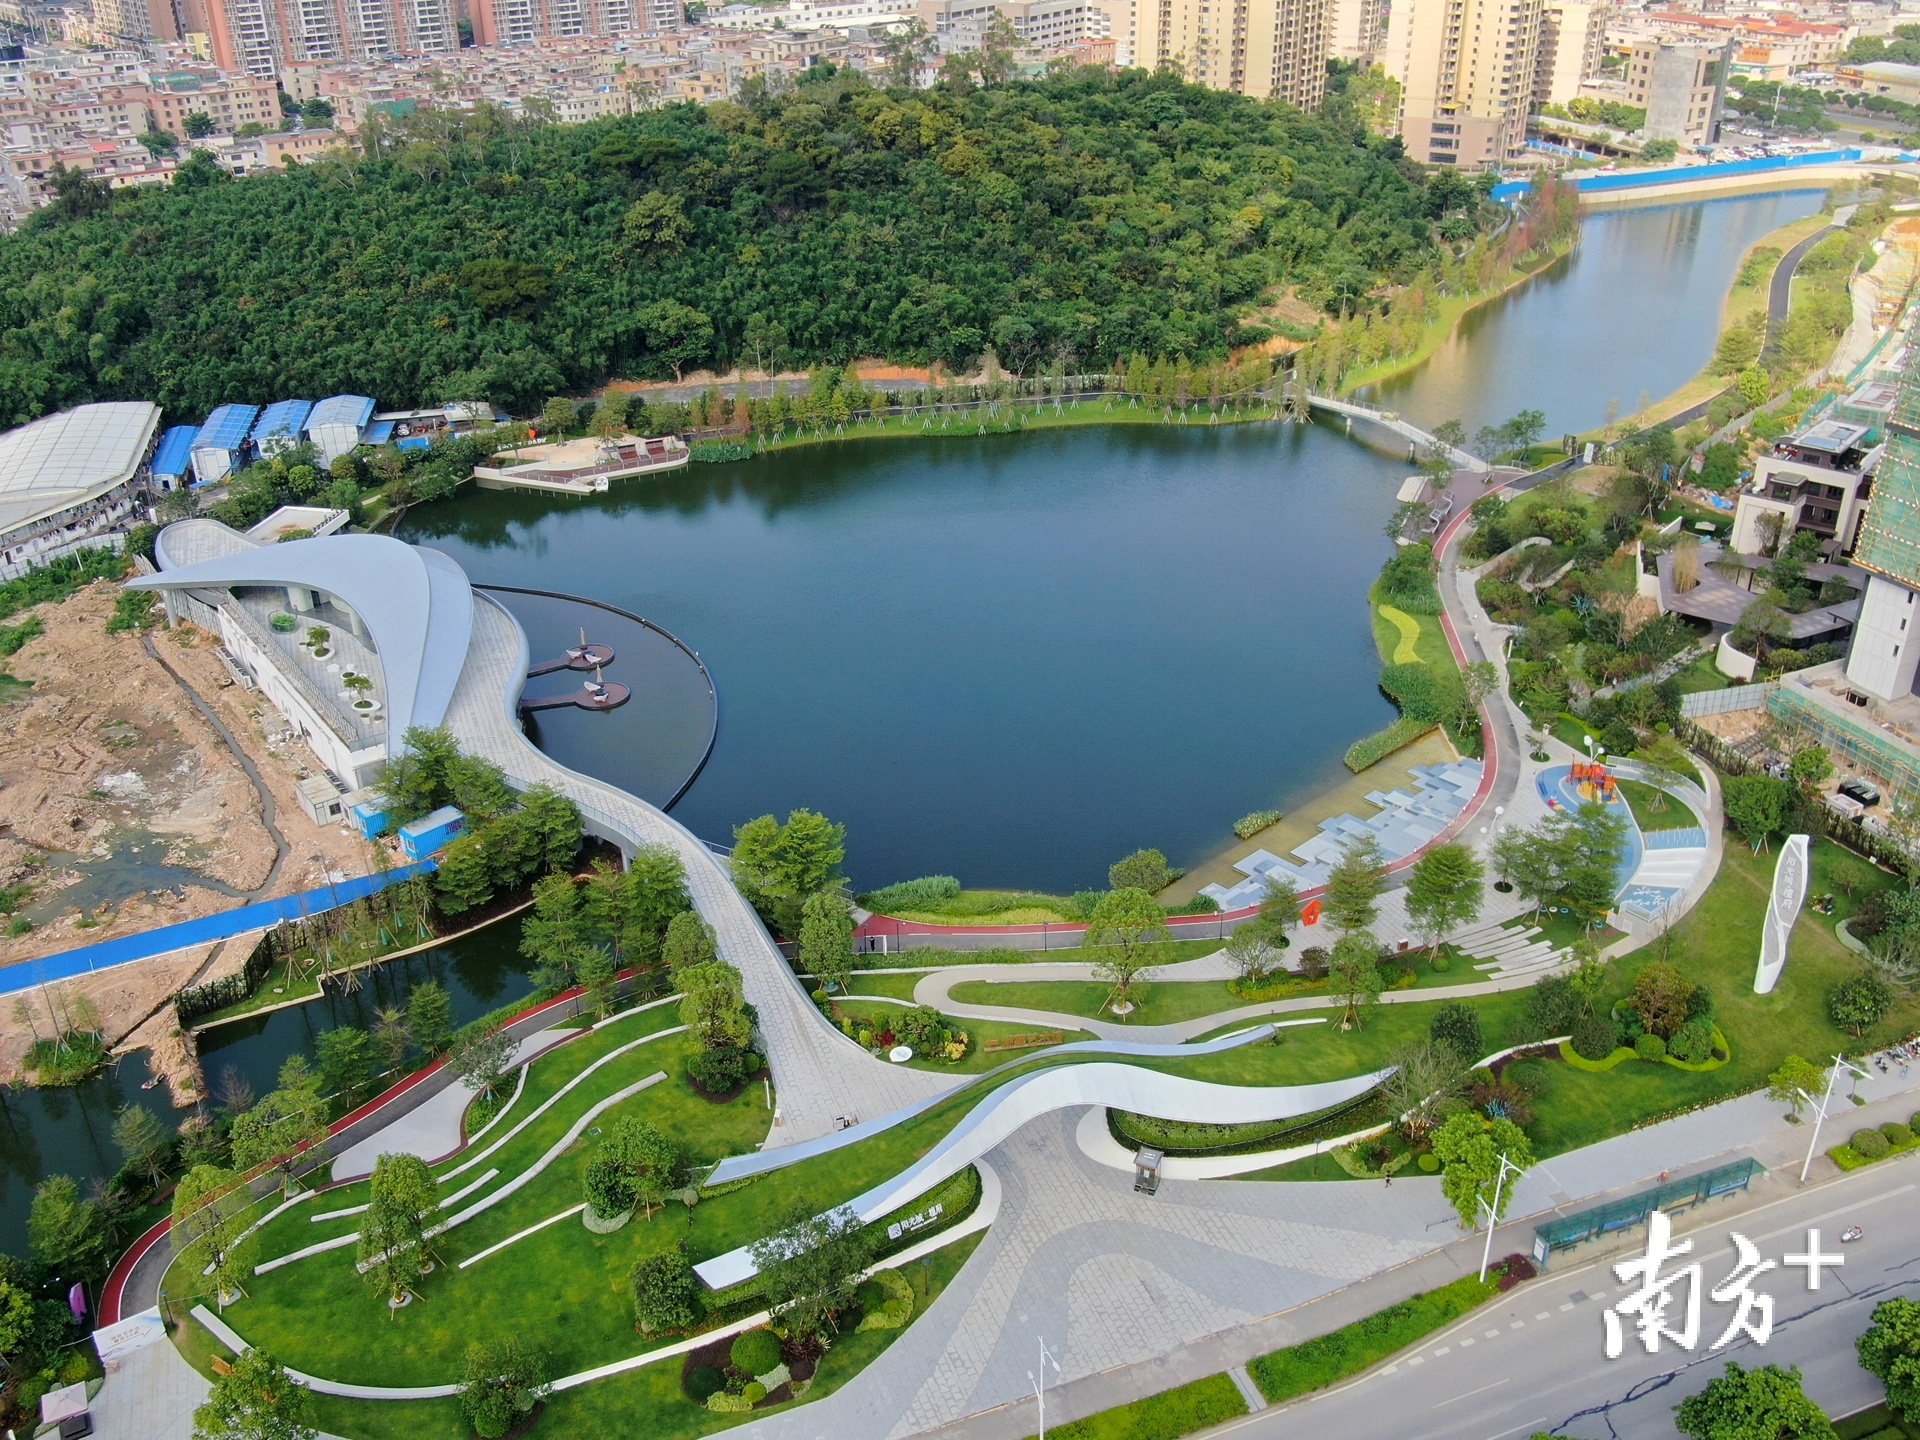 108公园将在今年8月建成开放。吴永强 摄